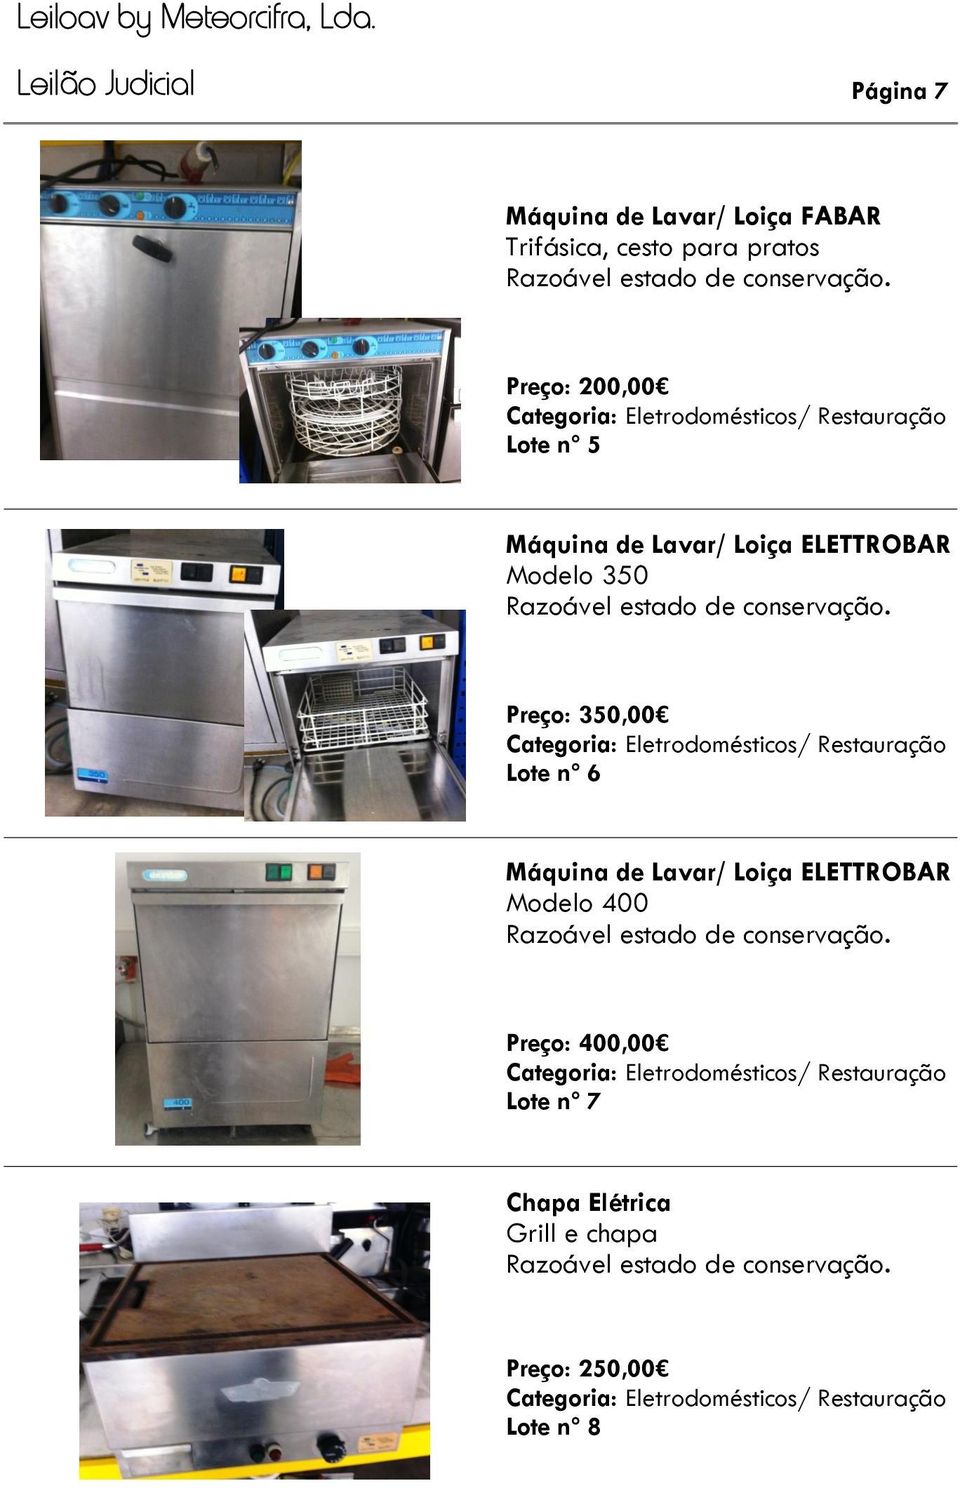 Preço: 350,00 Lote nº 6 Máquina de Lavar/ Loiça ELETTROBAR Modelo 400 Razoável estado de conservação.